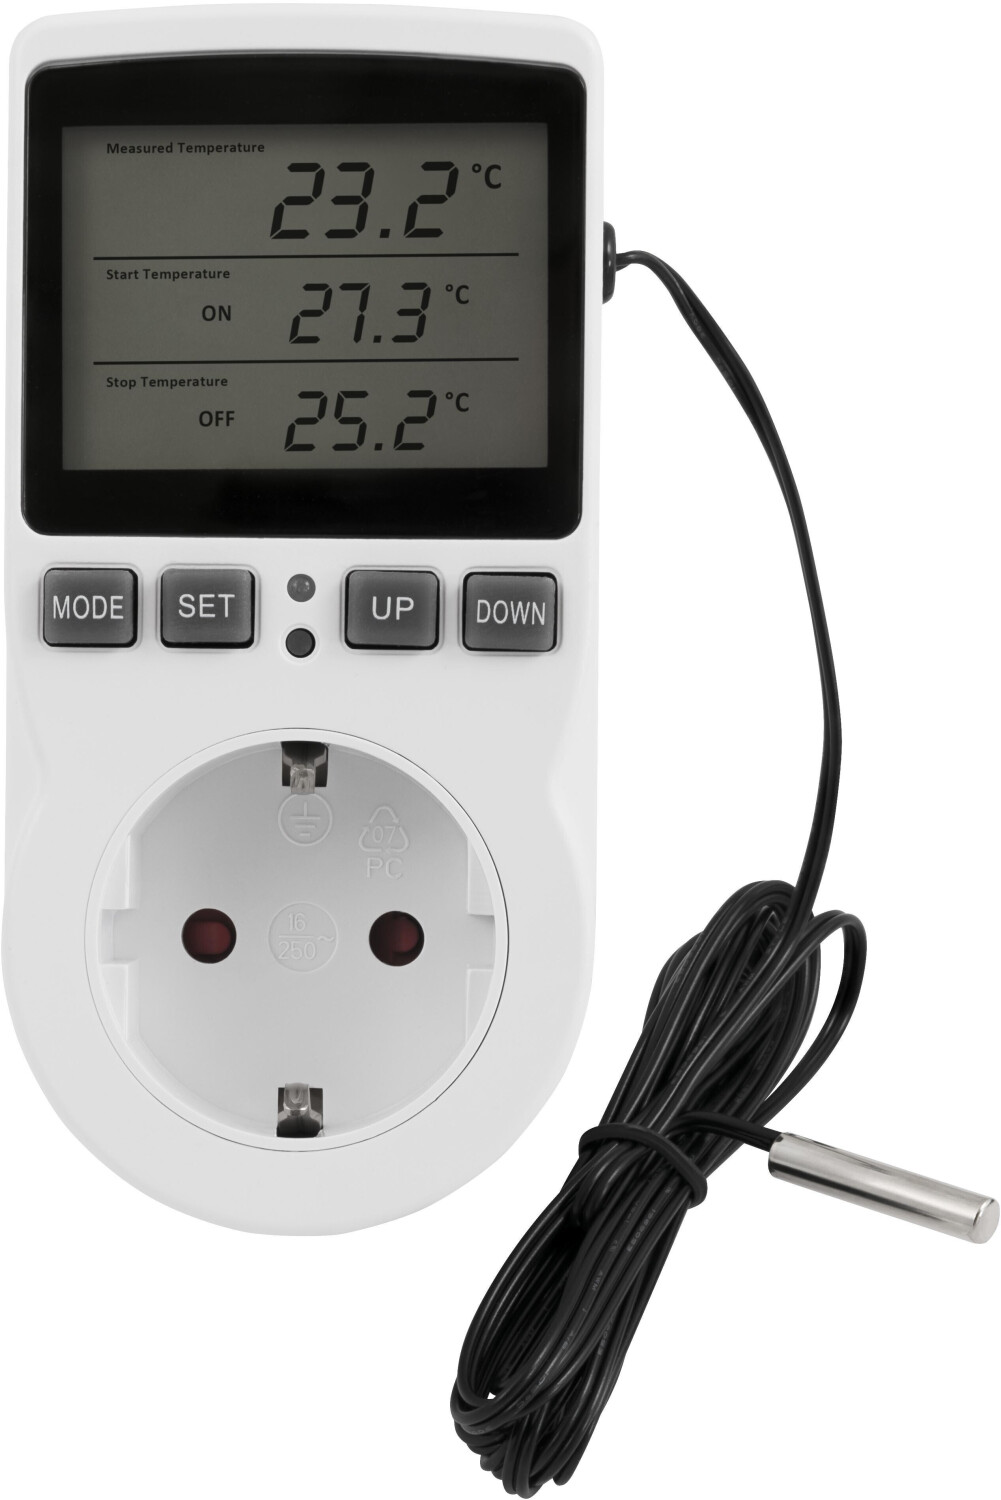 McPower Steckdosenthermostat TCU-440, für Heizung oder Klimagerät